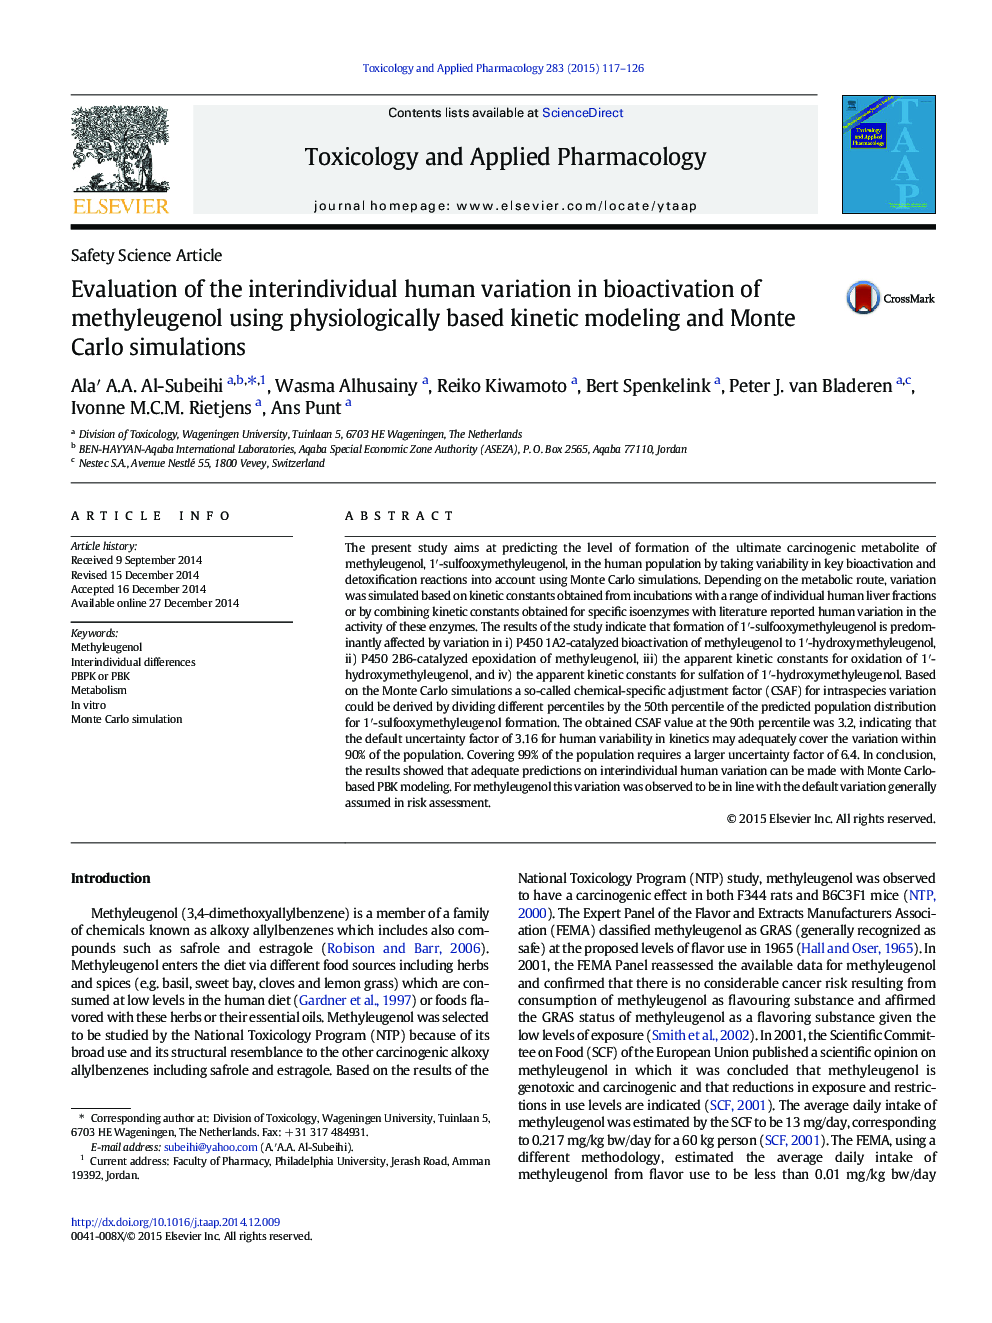 ارزیابی تغییرات بین فردی انسان در زیست فعال سازی متایلوژنول با استفاده از مدل سازی جنبشی مبتنی بر فیزیولوژیکی و شبیه سازی مونت کارلو 